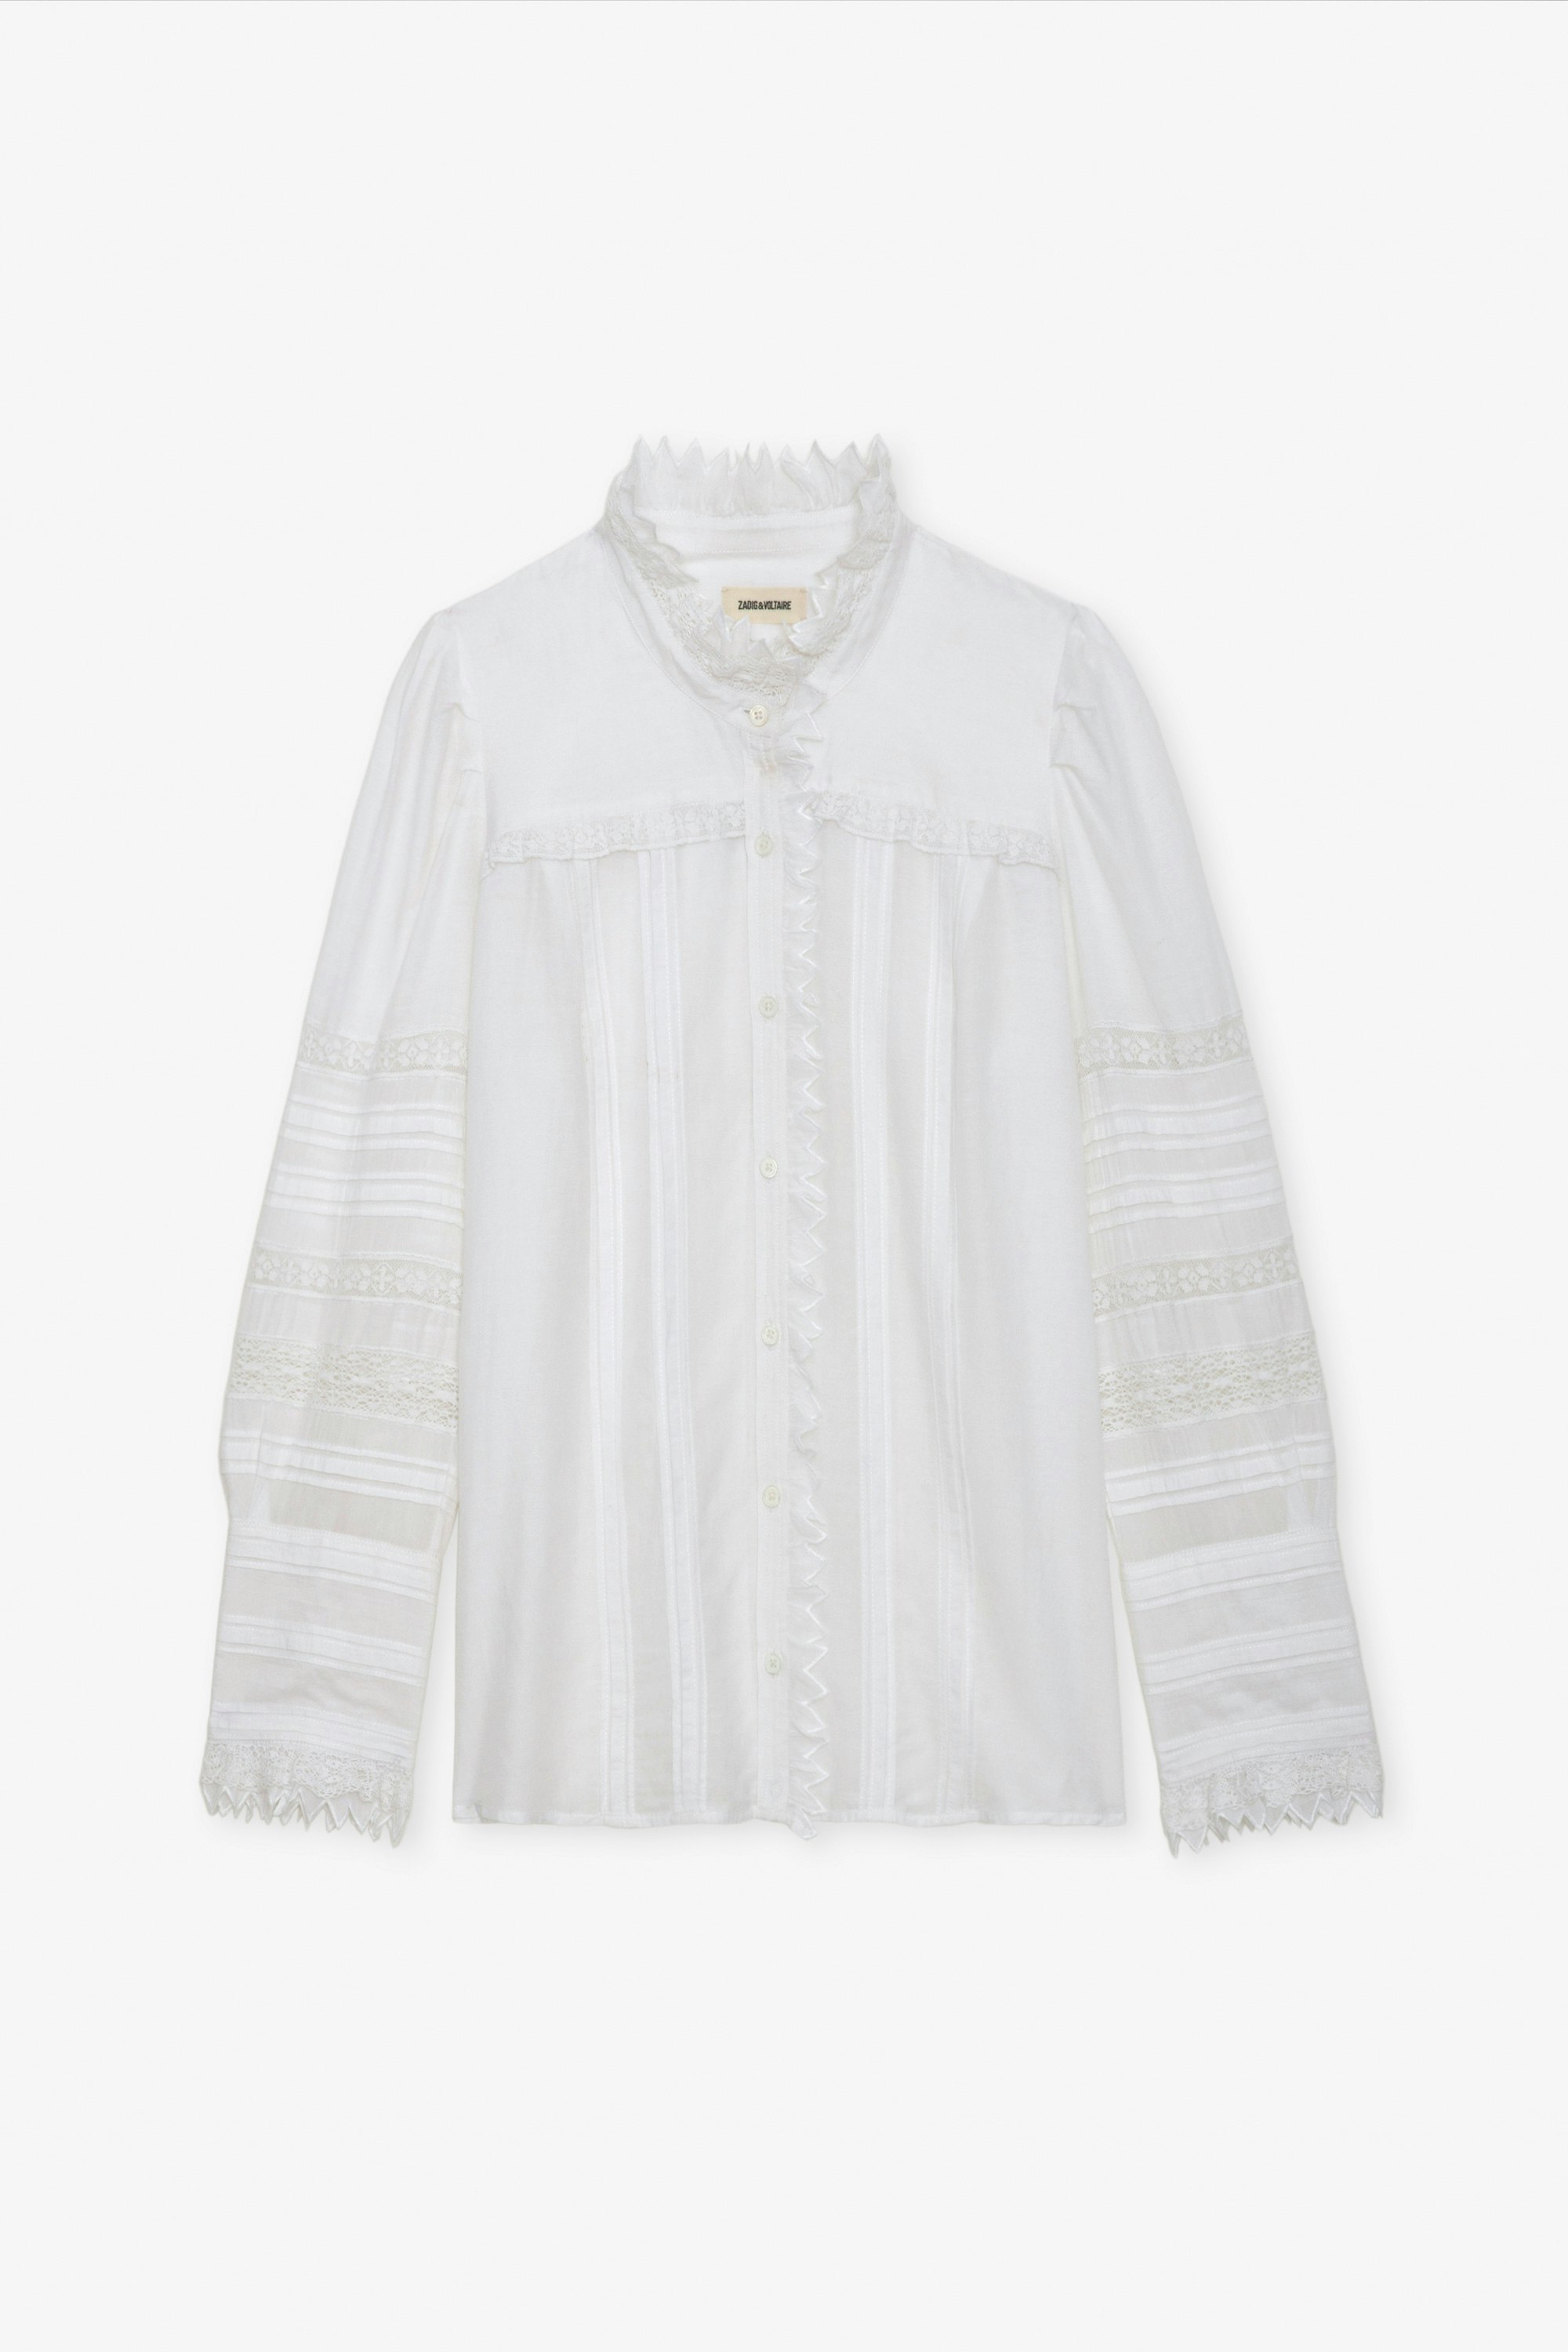 Blusa Trevy - Blusa blanca de algodón con mangas largas abullonadas, cintas de encaje y fruncidos.